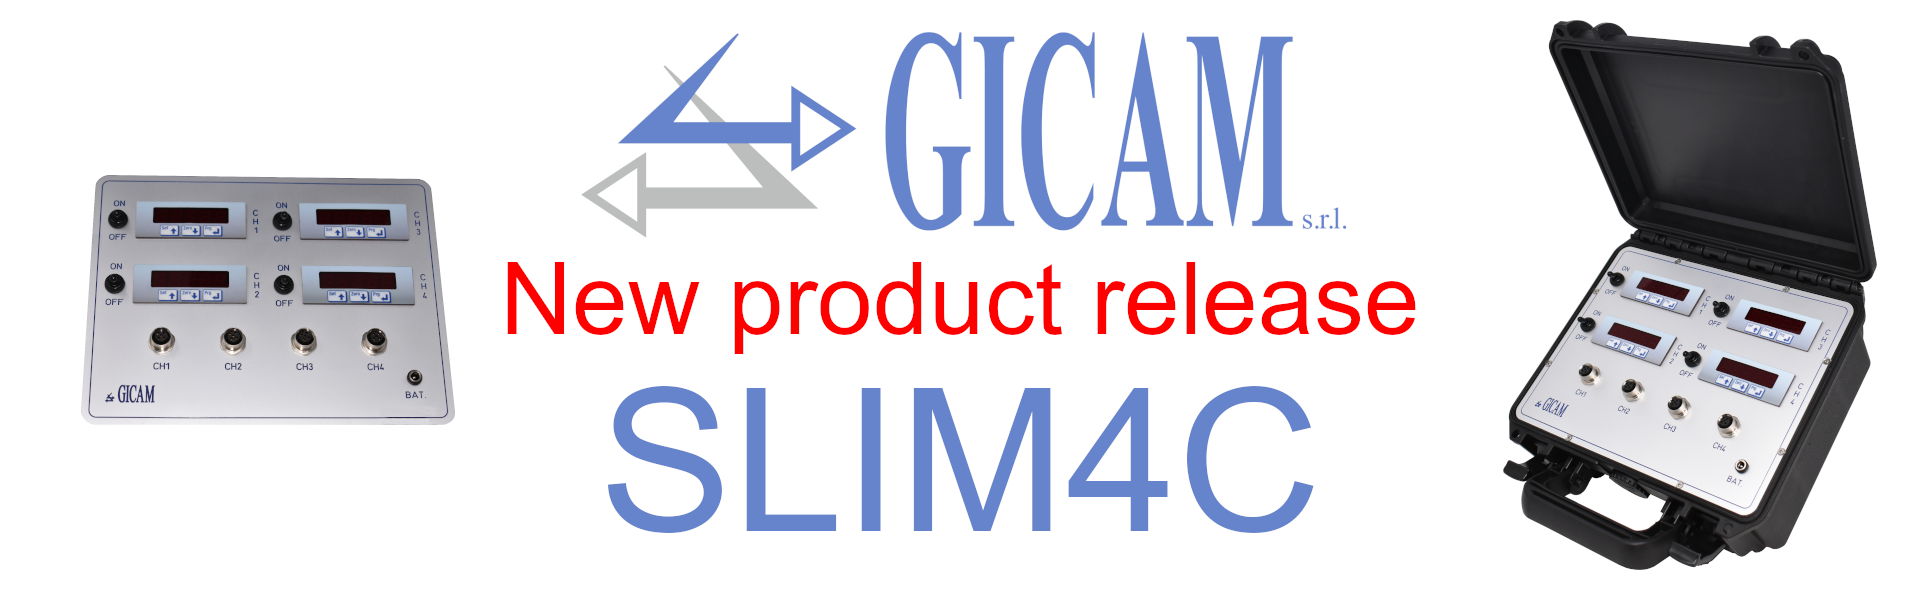 SLIM4C� costituito da 4 strumenti che sono in grado di visualizzare altrettanti canali dedicati